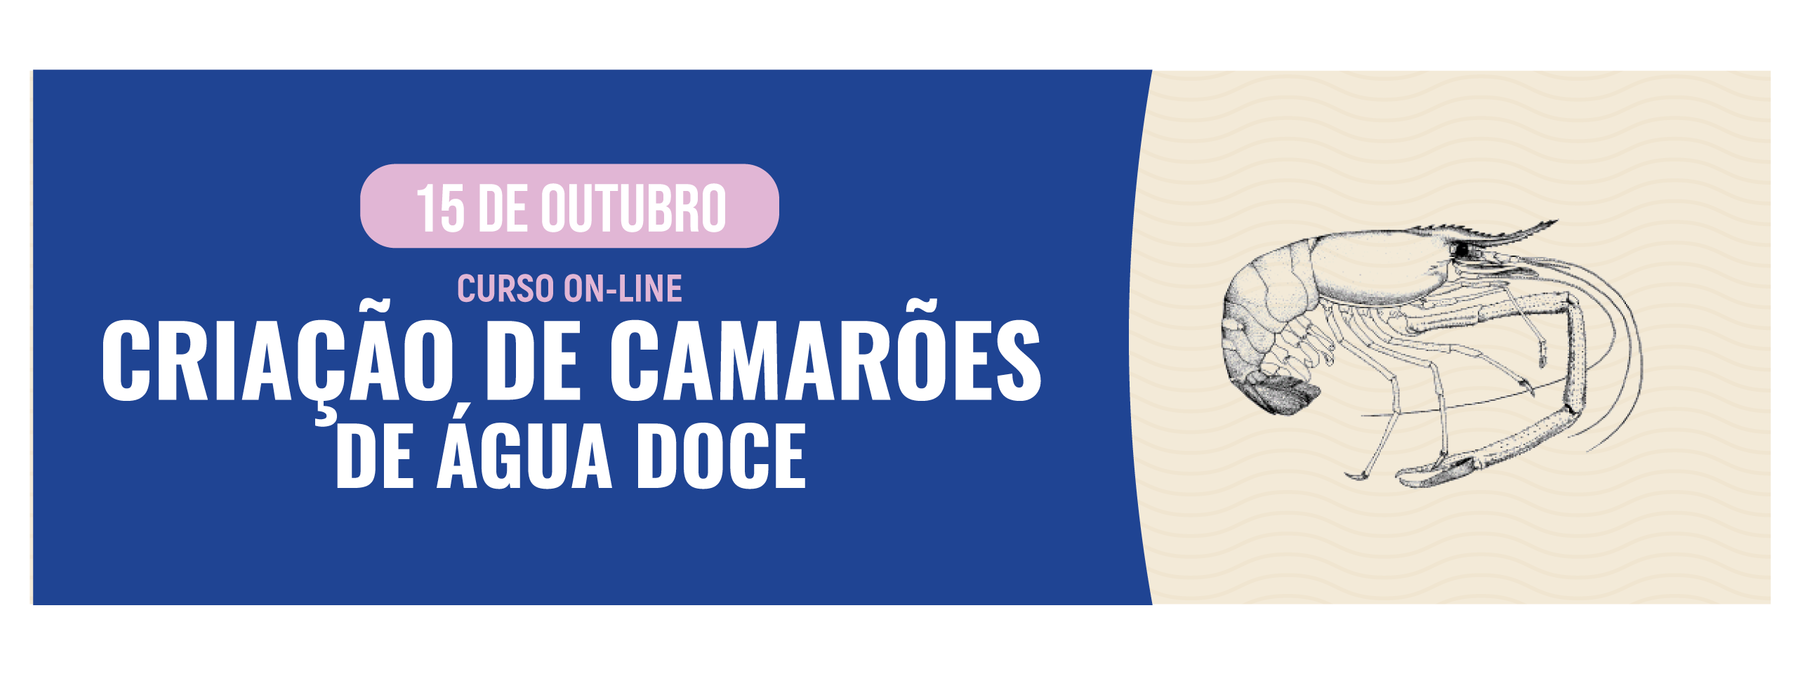 CURSO ON-LINE: CRIAÇÃO DE CAMARÕES DE ÁGUA DOCE